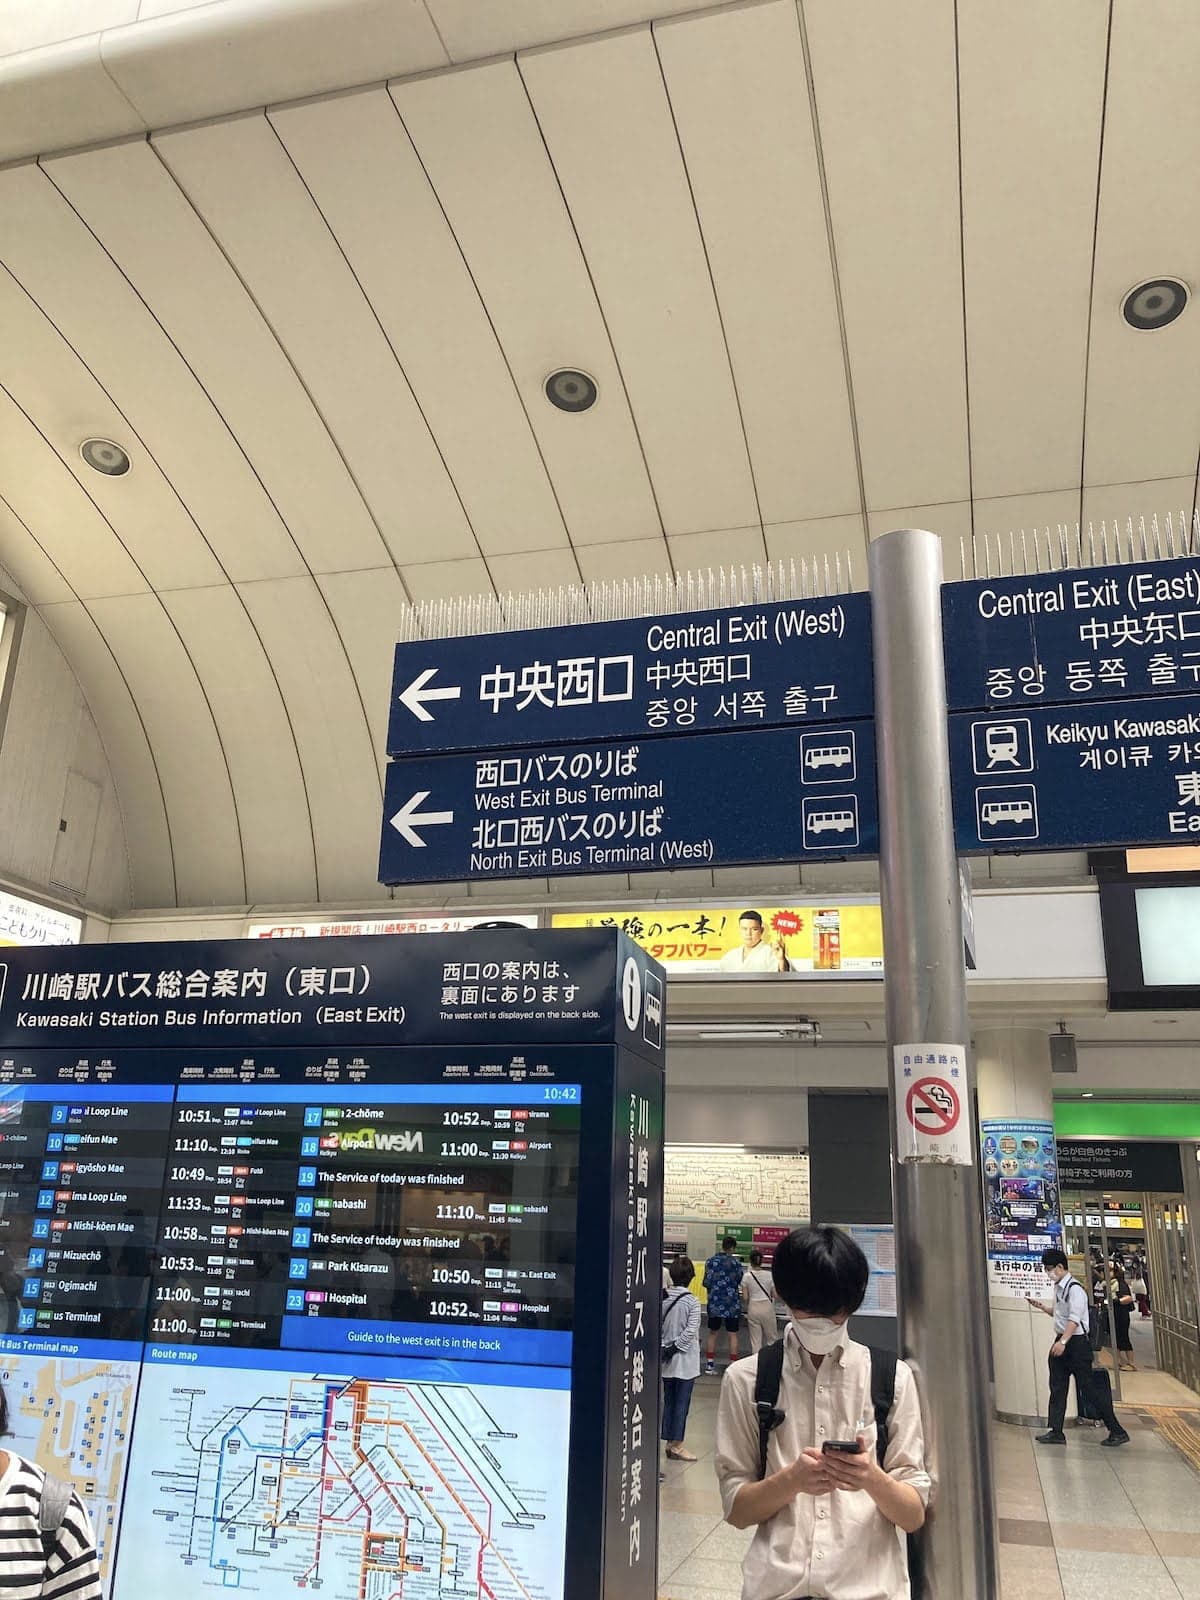 JR川崎駅の改札を出てすぐに看板があります。西口のラゾーナ方面にお進みください。